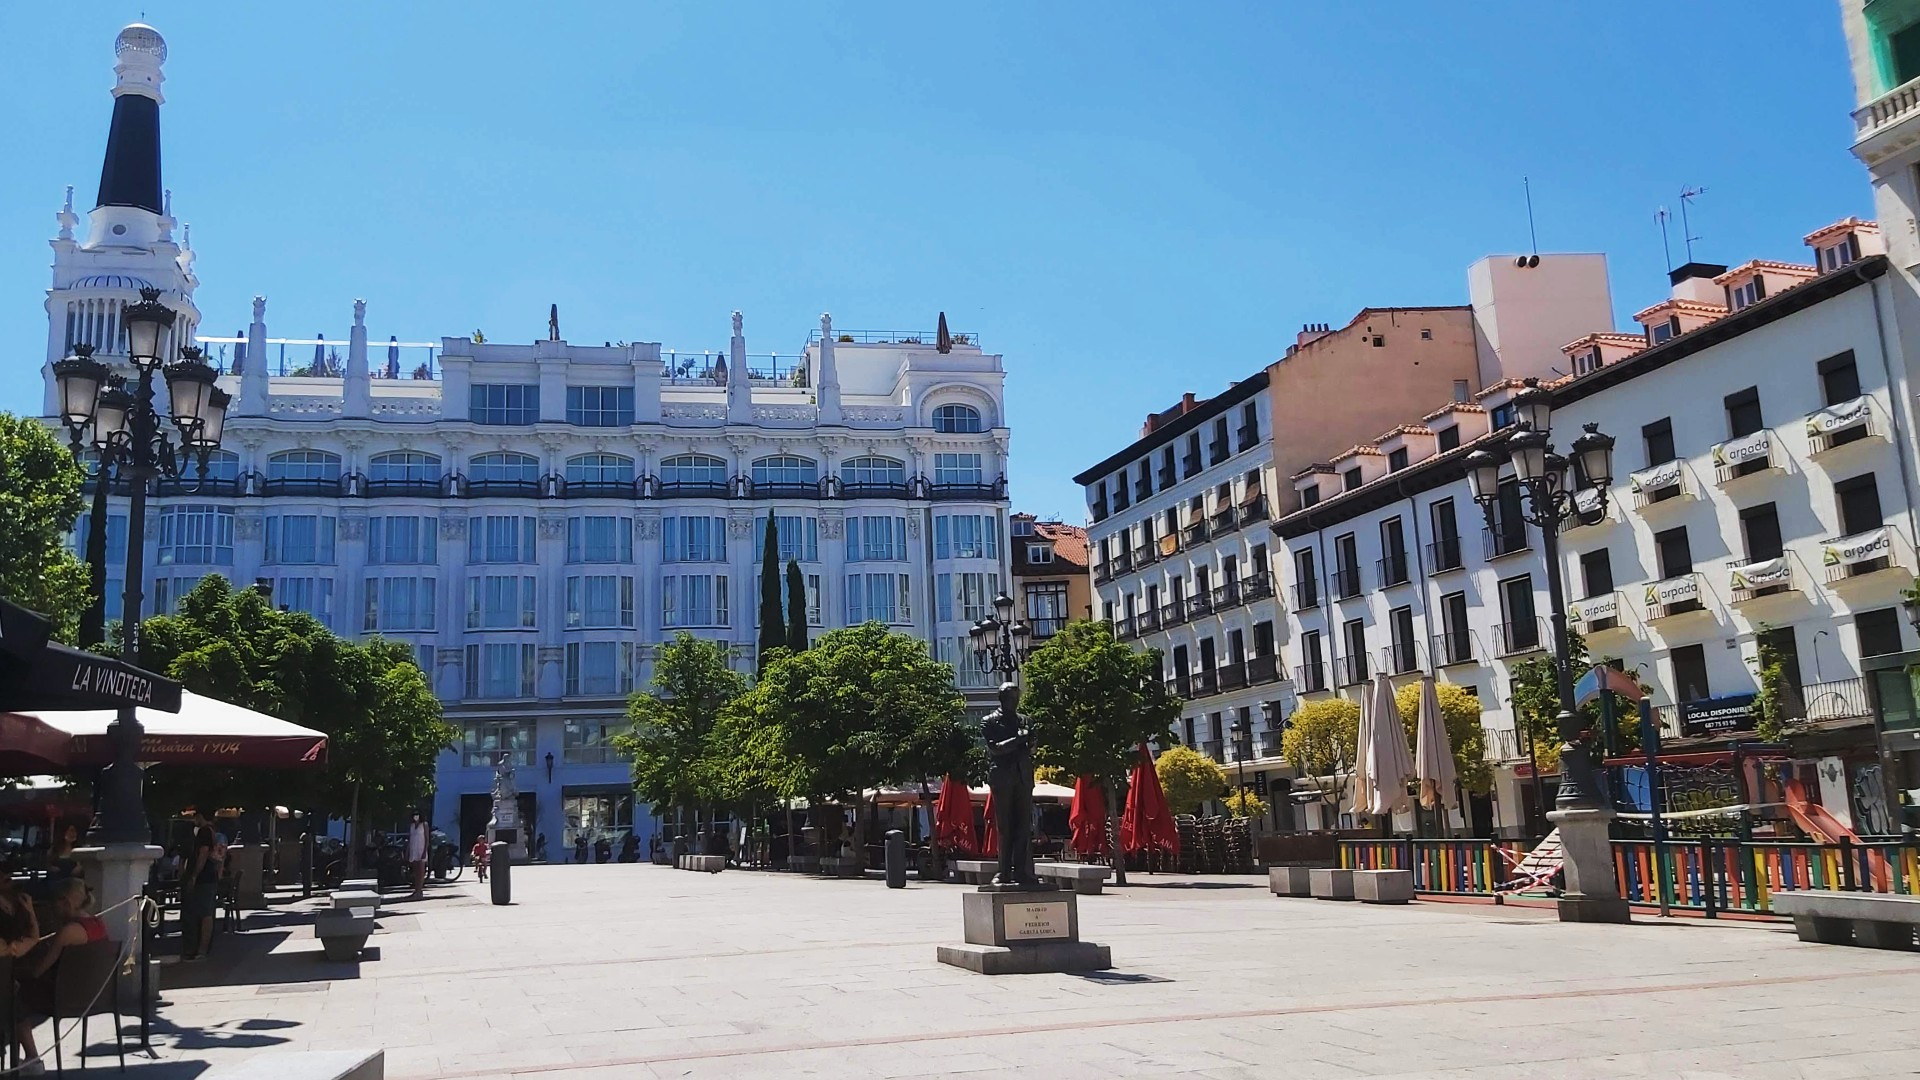 Lleno de bares de tapas y terrazas, el Barrio de Las Letras es el distrito literario de Madrid y uno de los más cercanos al Triángulo del Arte y El Prado.